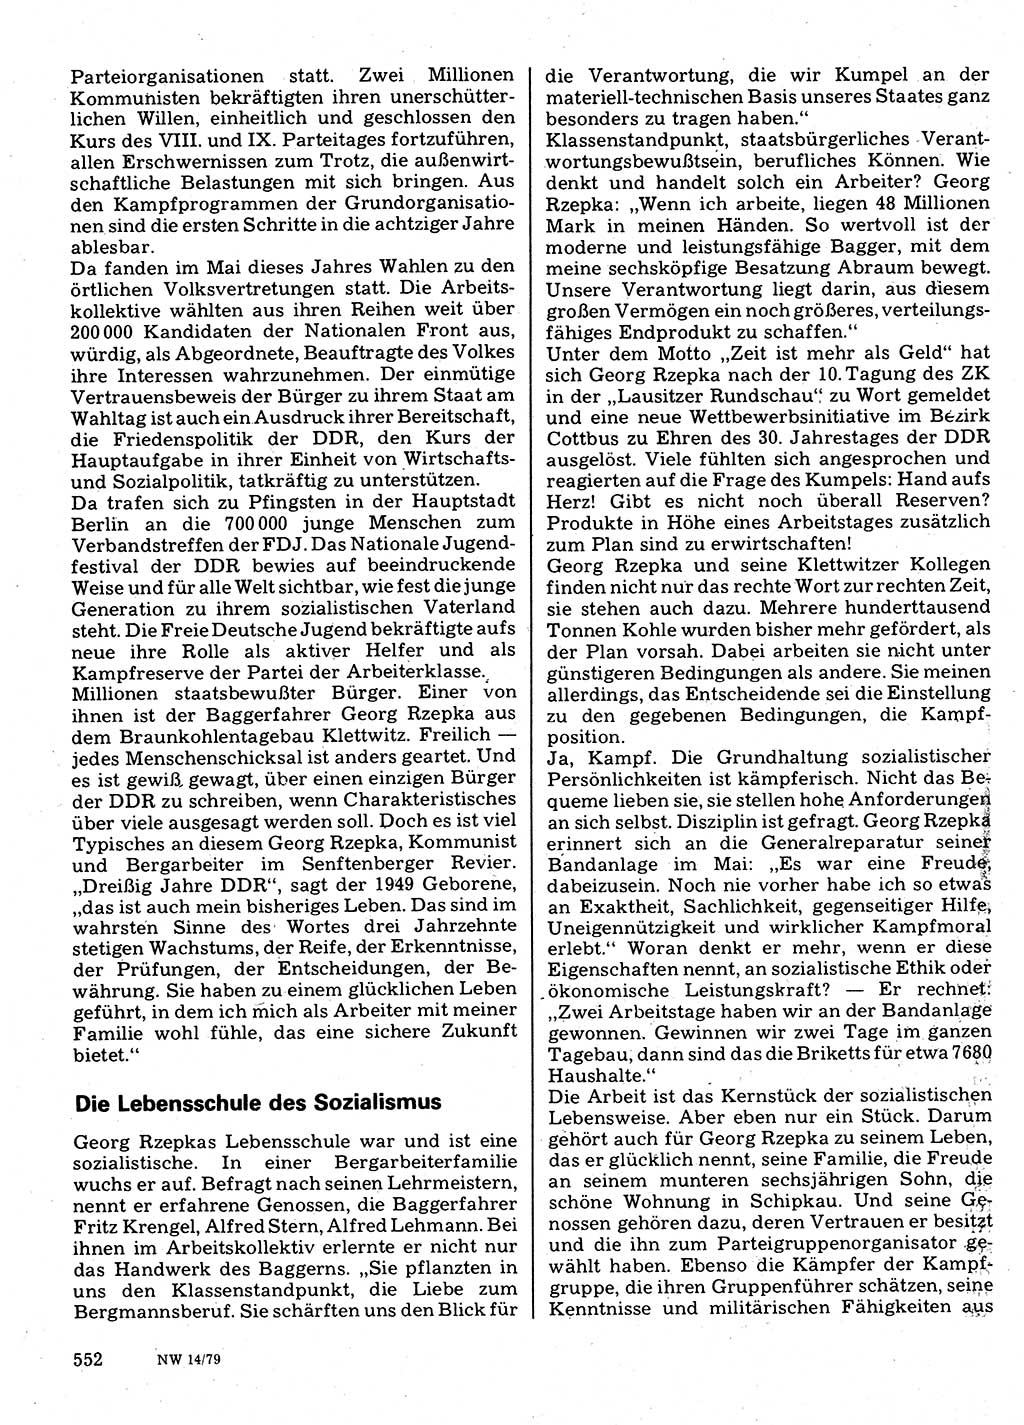 Neuer Weg (NW), Organ des Zentralkomitees (ZK) der SED (Sozialistische Einheitspartei Deutschlands) für Fragen des Parteilebens, 34. Jahrgang [Deutsche Demokratische Republik (DDR)] 1979, Seite 552 (NW ZK SED DDR 1979, S. 552)